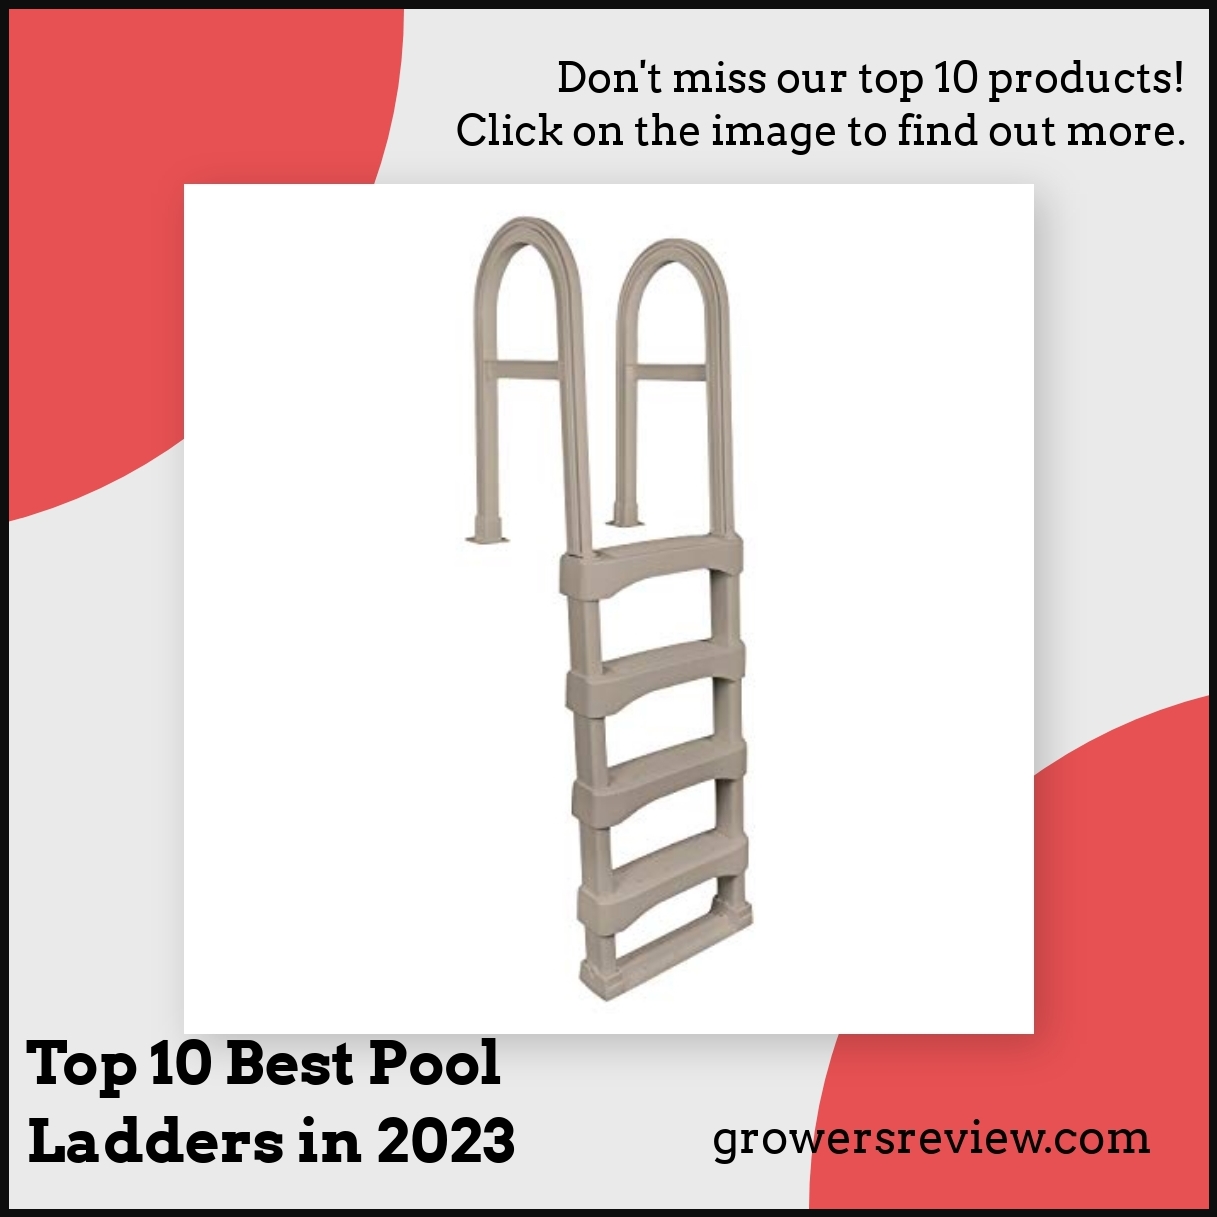 Top 10 Best Pool Ladders in 2023